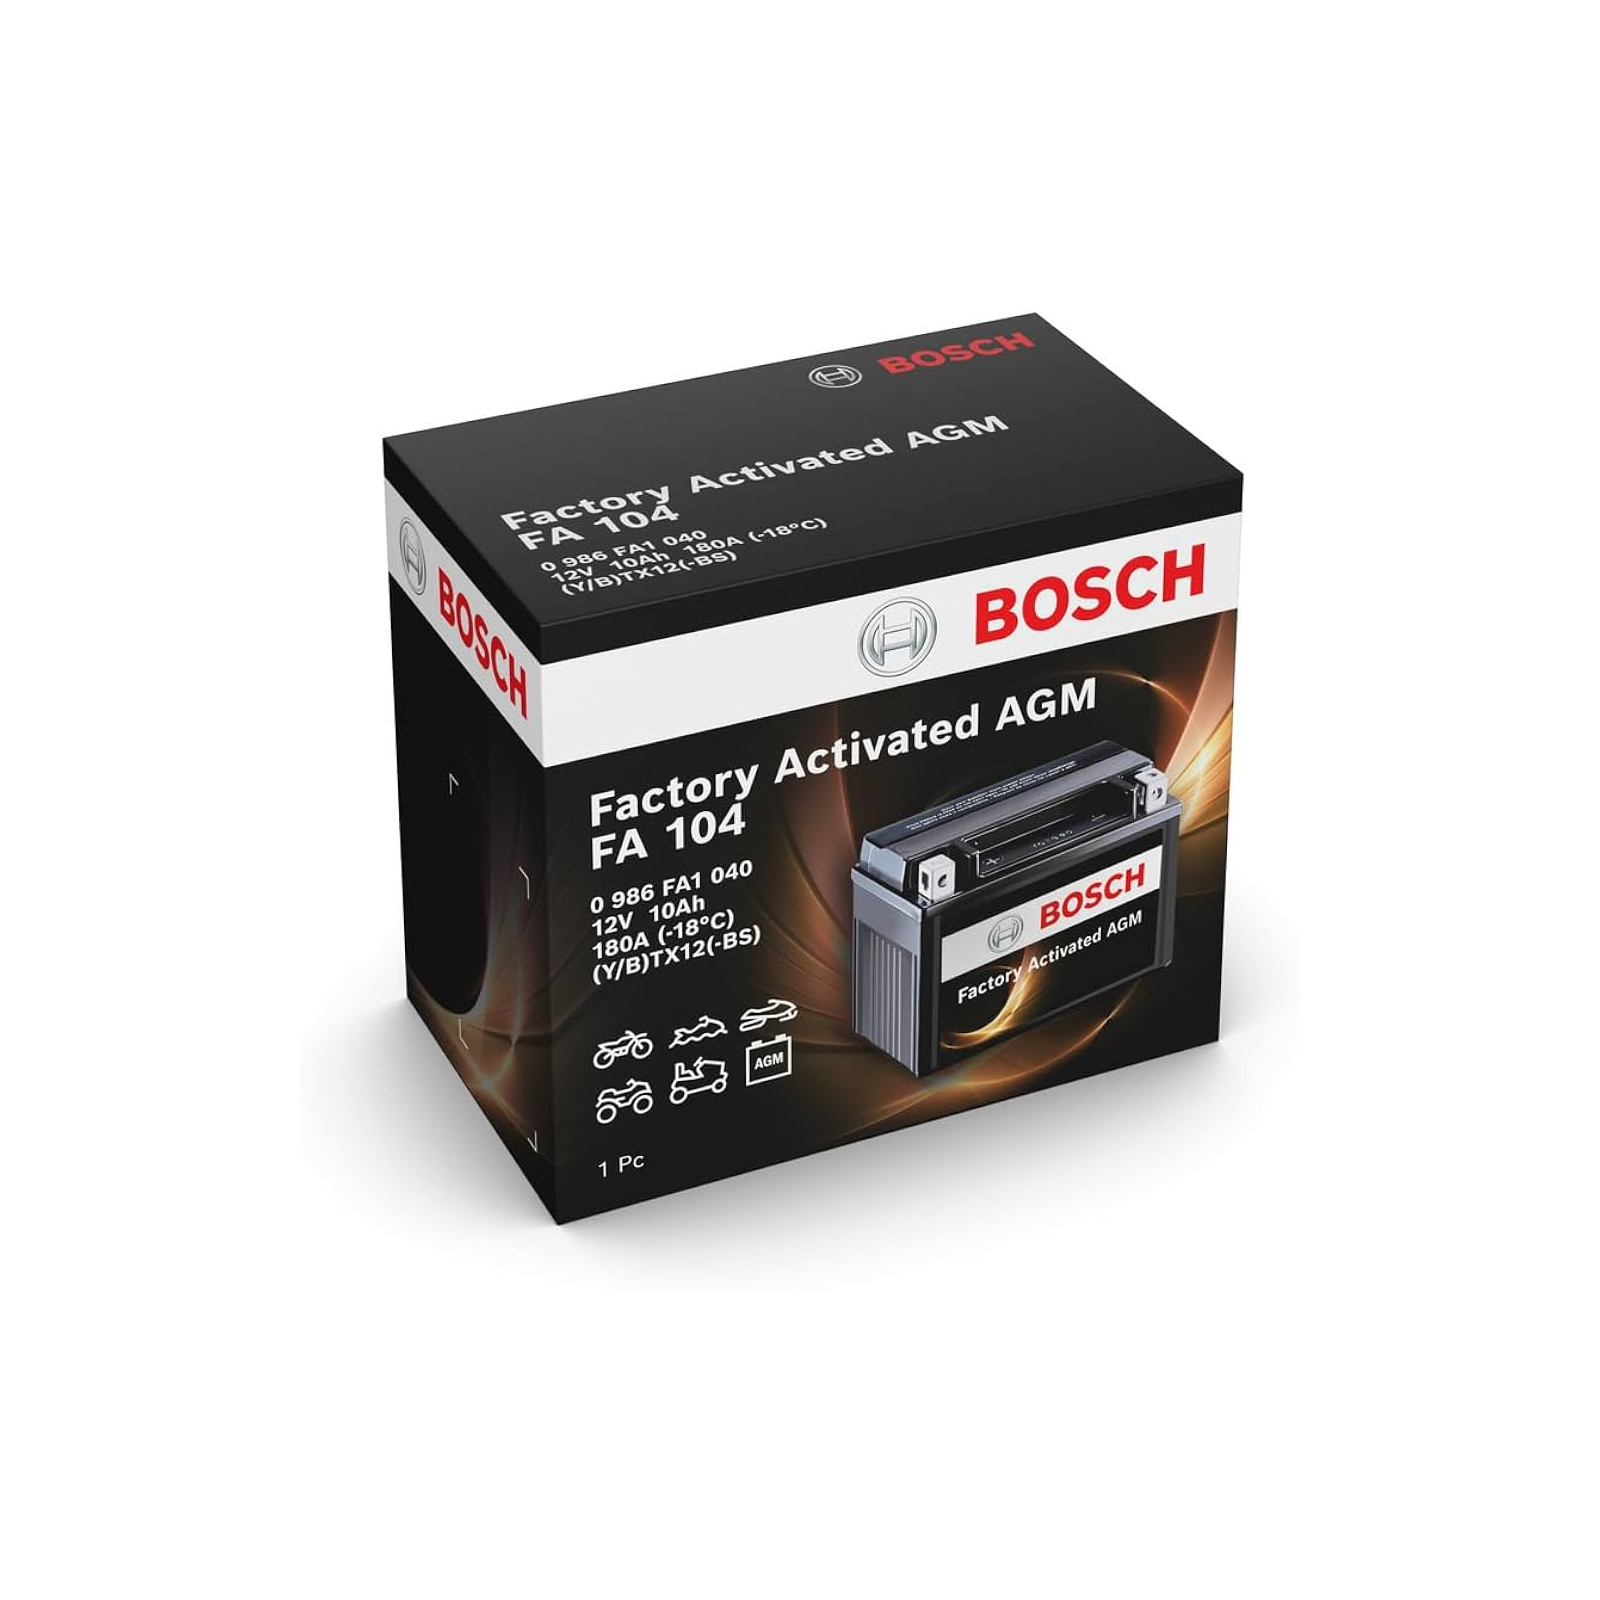 Аккумулятор автомобильный Bosch 0 986 FA1 040 изображение 2